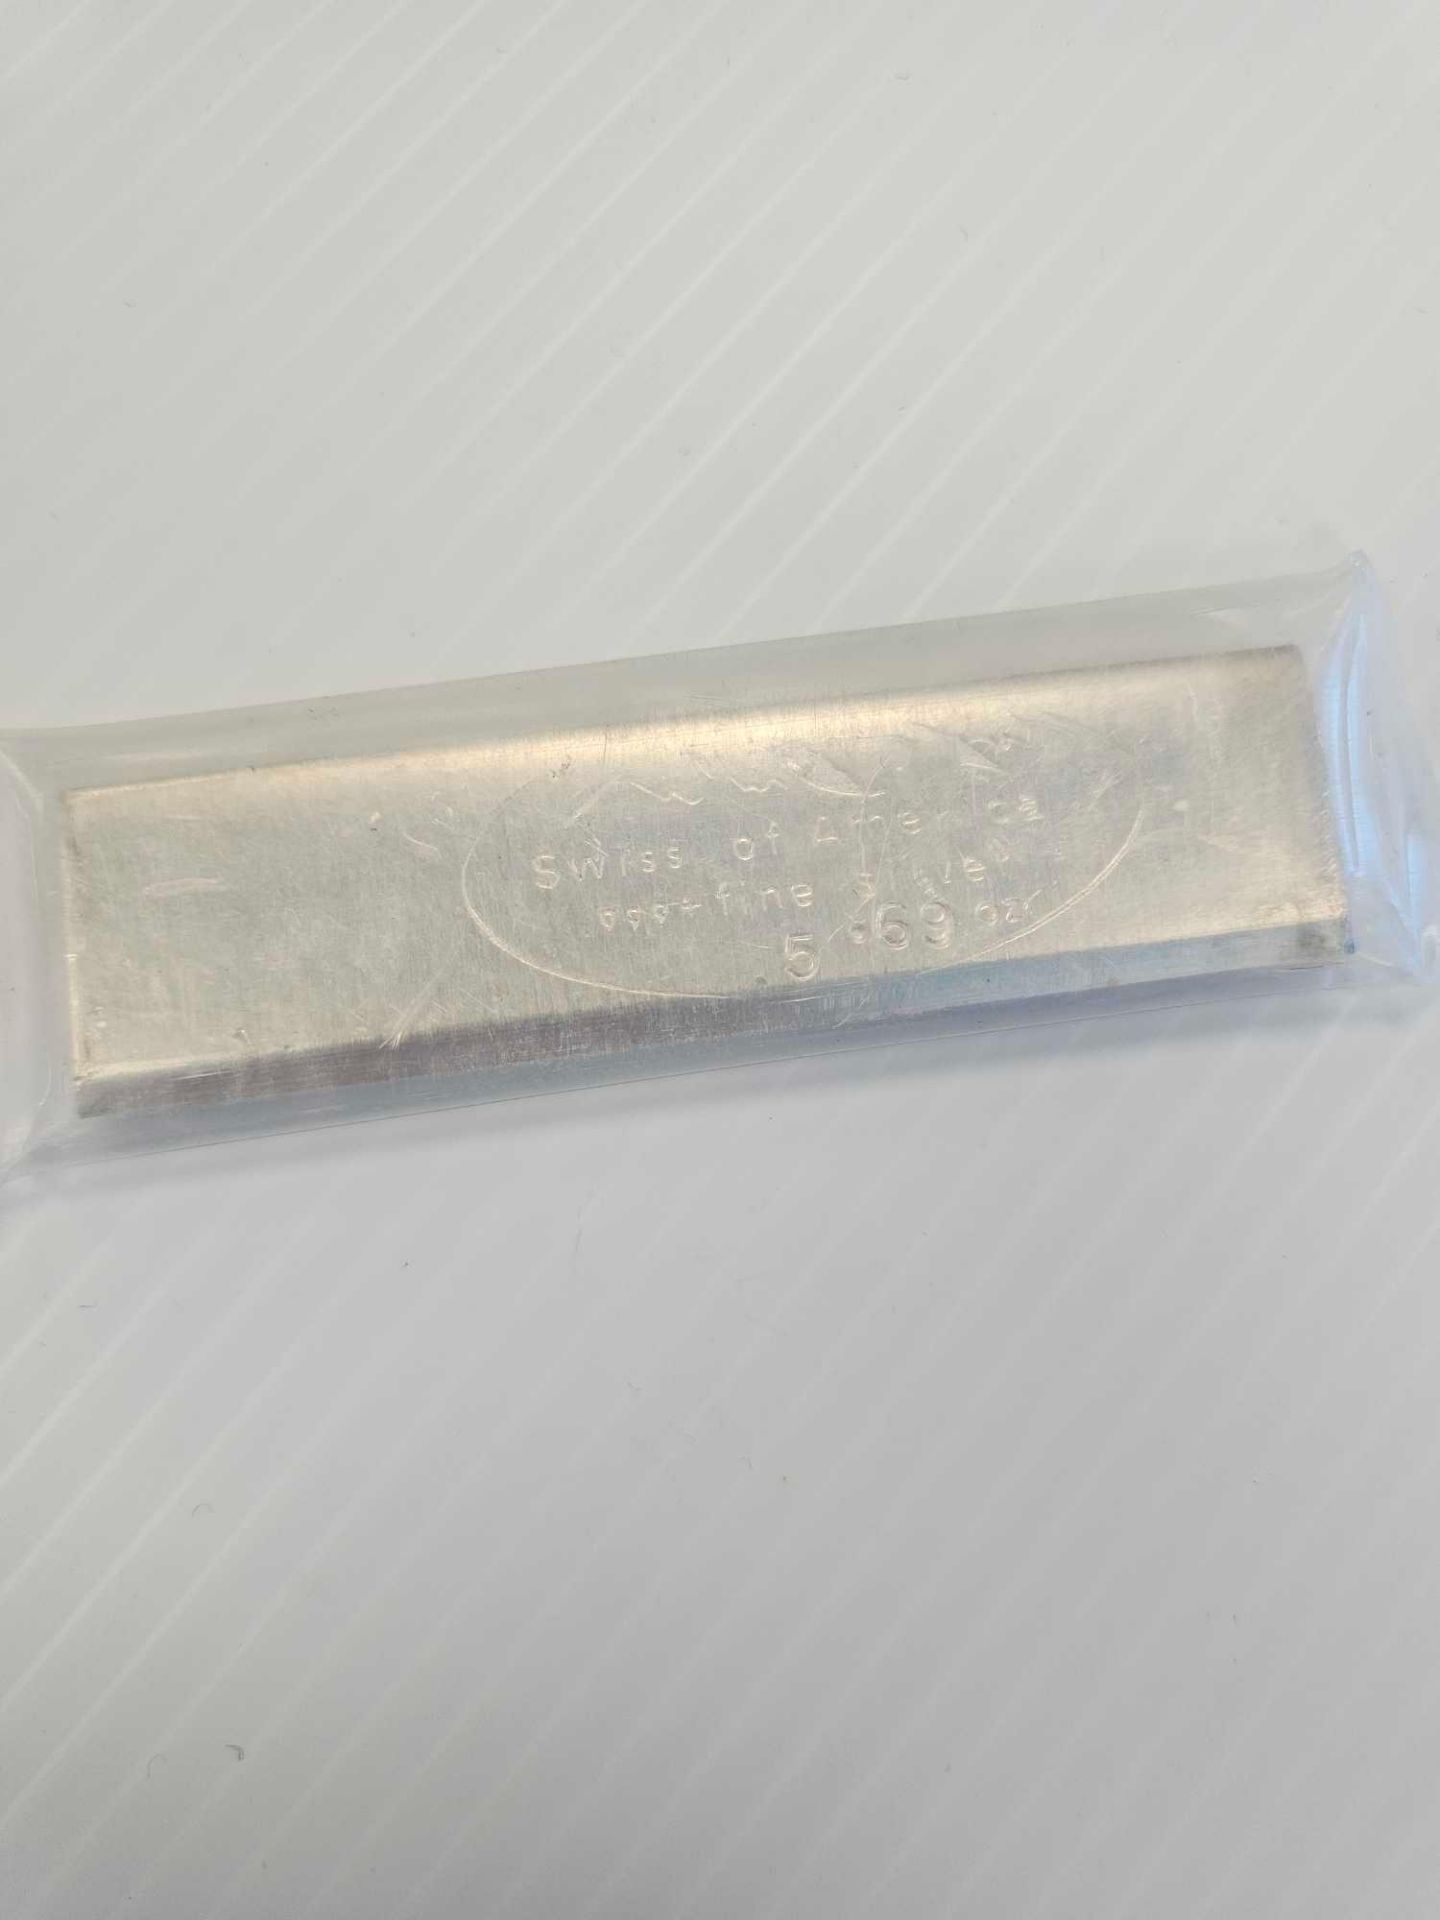 rare 5.69 oz vintage draper mint silver bar (kit Kat stick) - Image 3 of 4